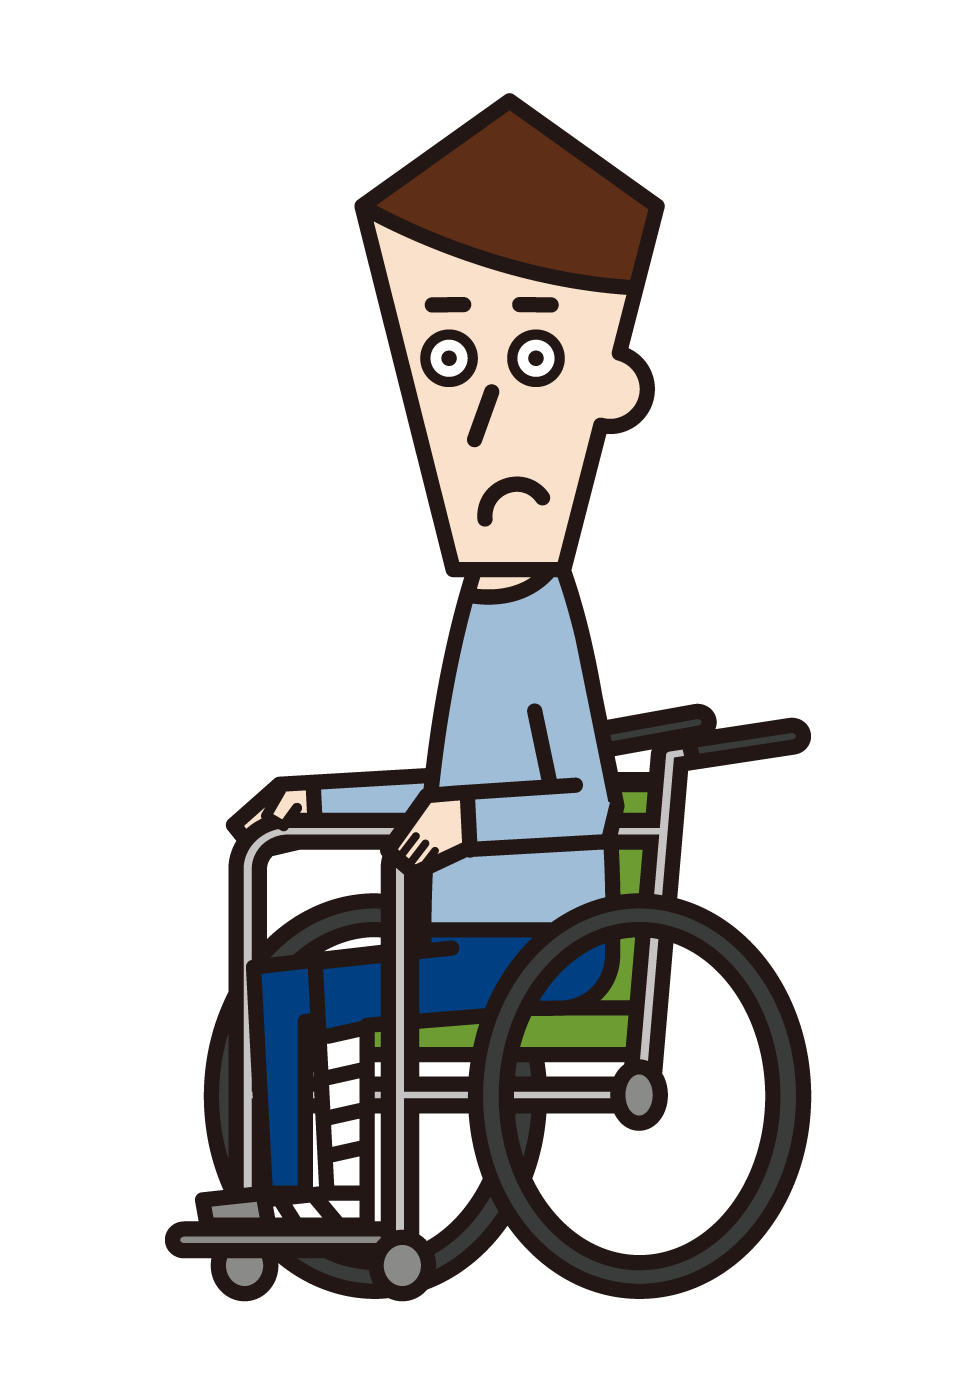 腿骨折坐在輪椅上的人的插圖